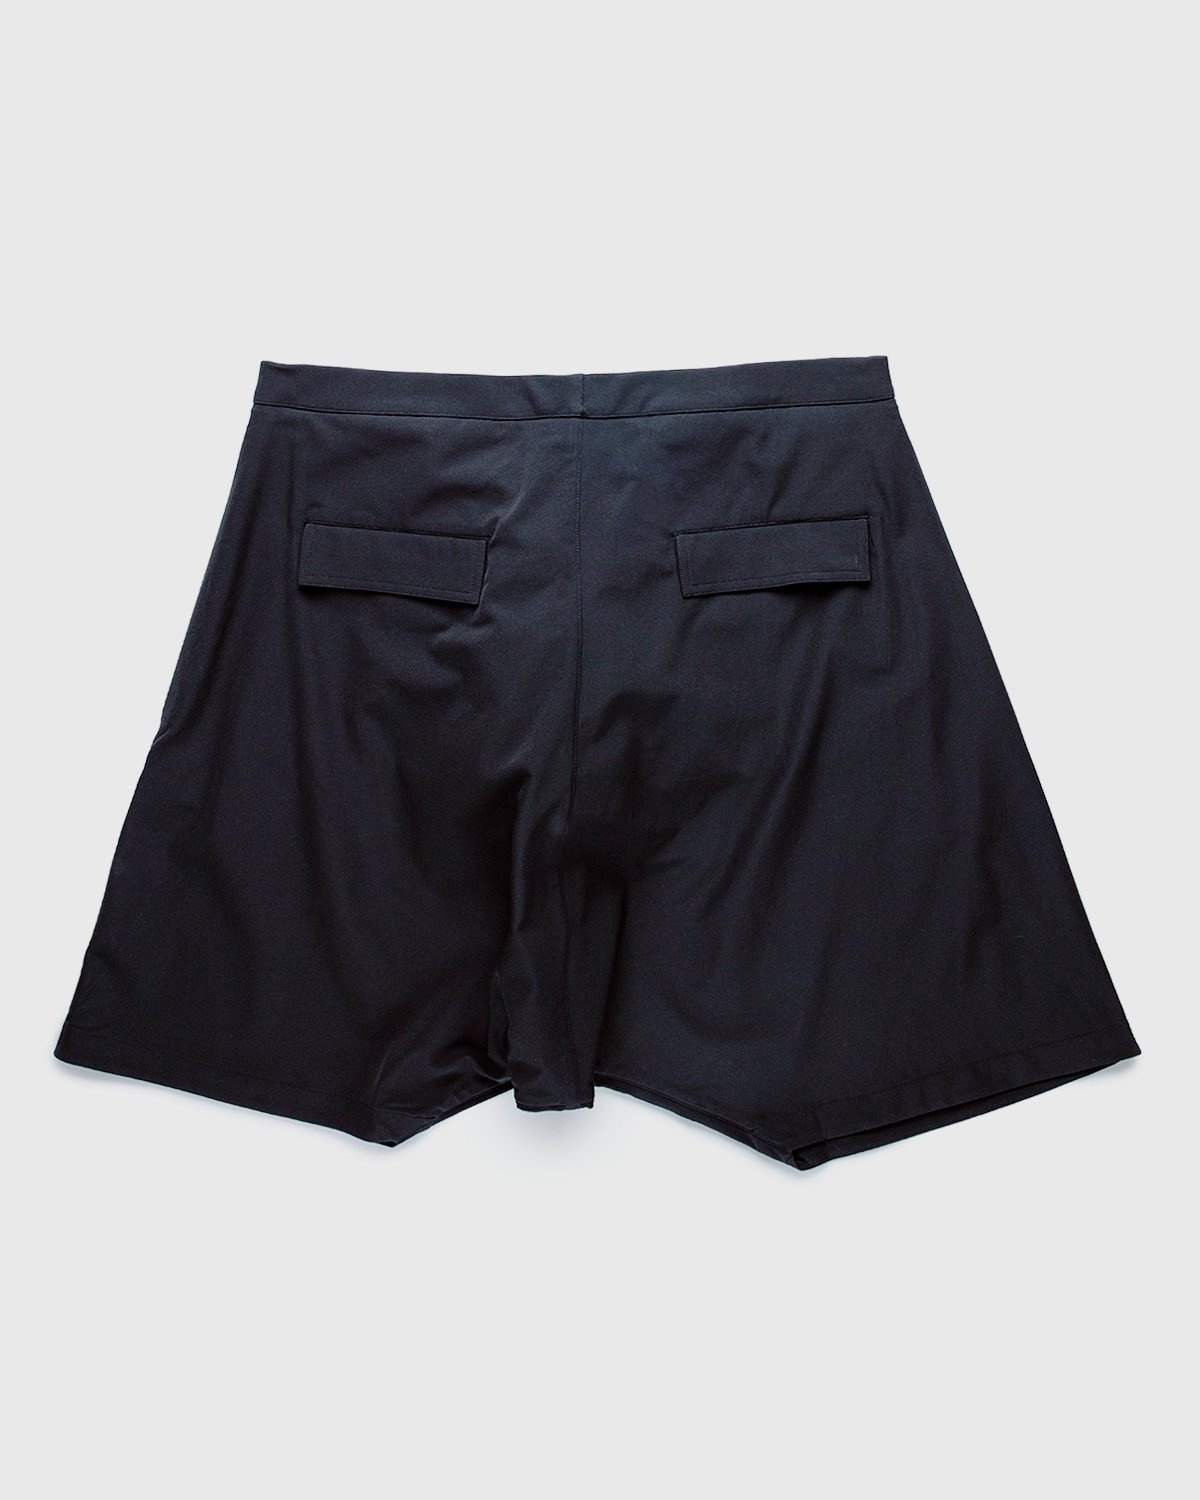 ACRONYM – SP28-DS Pants Black - Active Pants - Black - Image 2